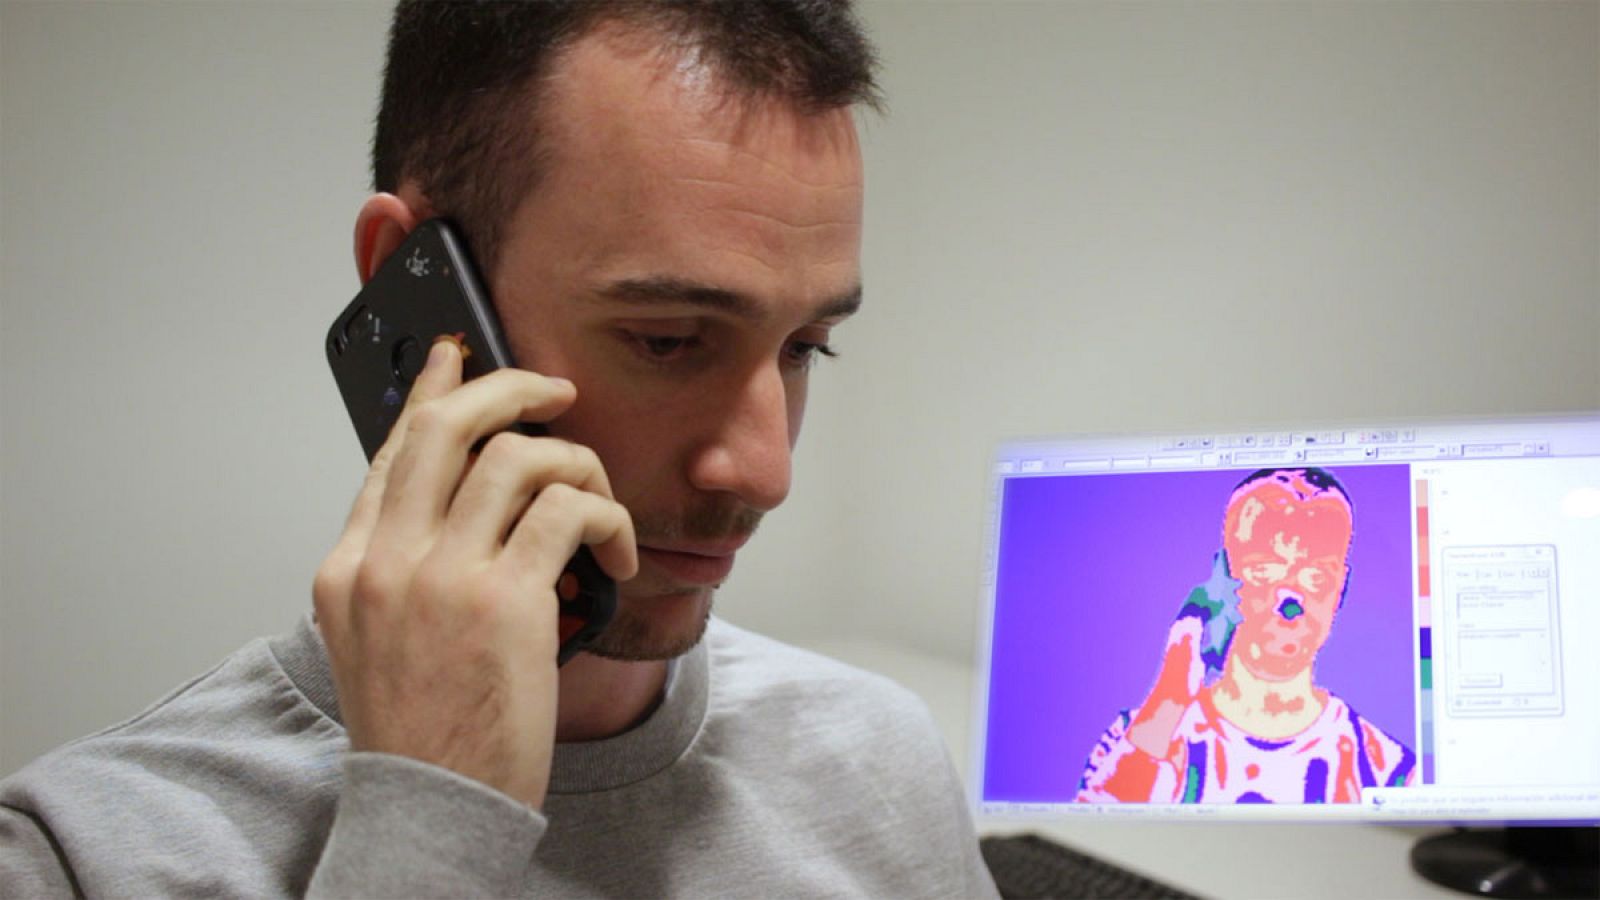 Uno de los participantes en el estudio realiza la llamada de teléfono en la que debe mentir a su interlocutor.